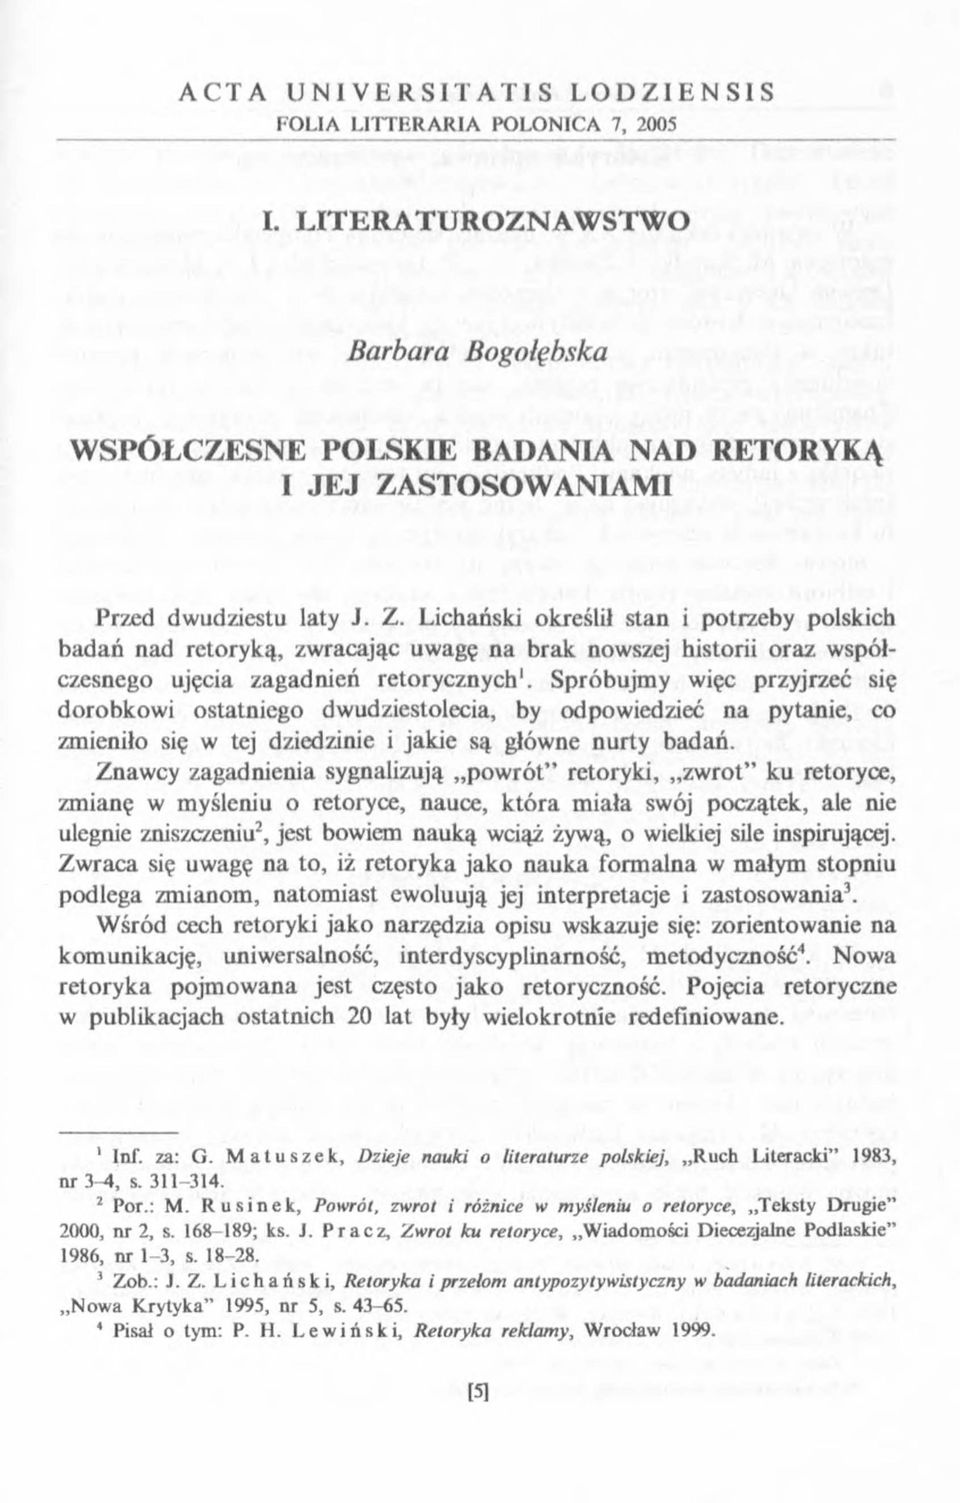 STOSOWANIAMI Przed dwudziestu laty J. Z. Uchański określił stan i potrzeby polskich badań nad retoryką, zwracając uwagę na brak nowszej historii oraz współczesnego ujęcia zagadnień retorycznych1.